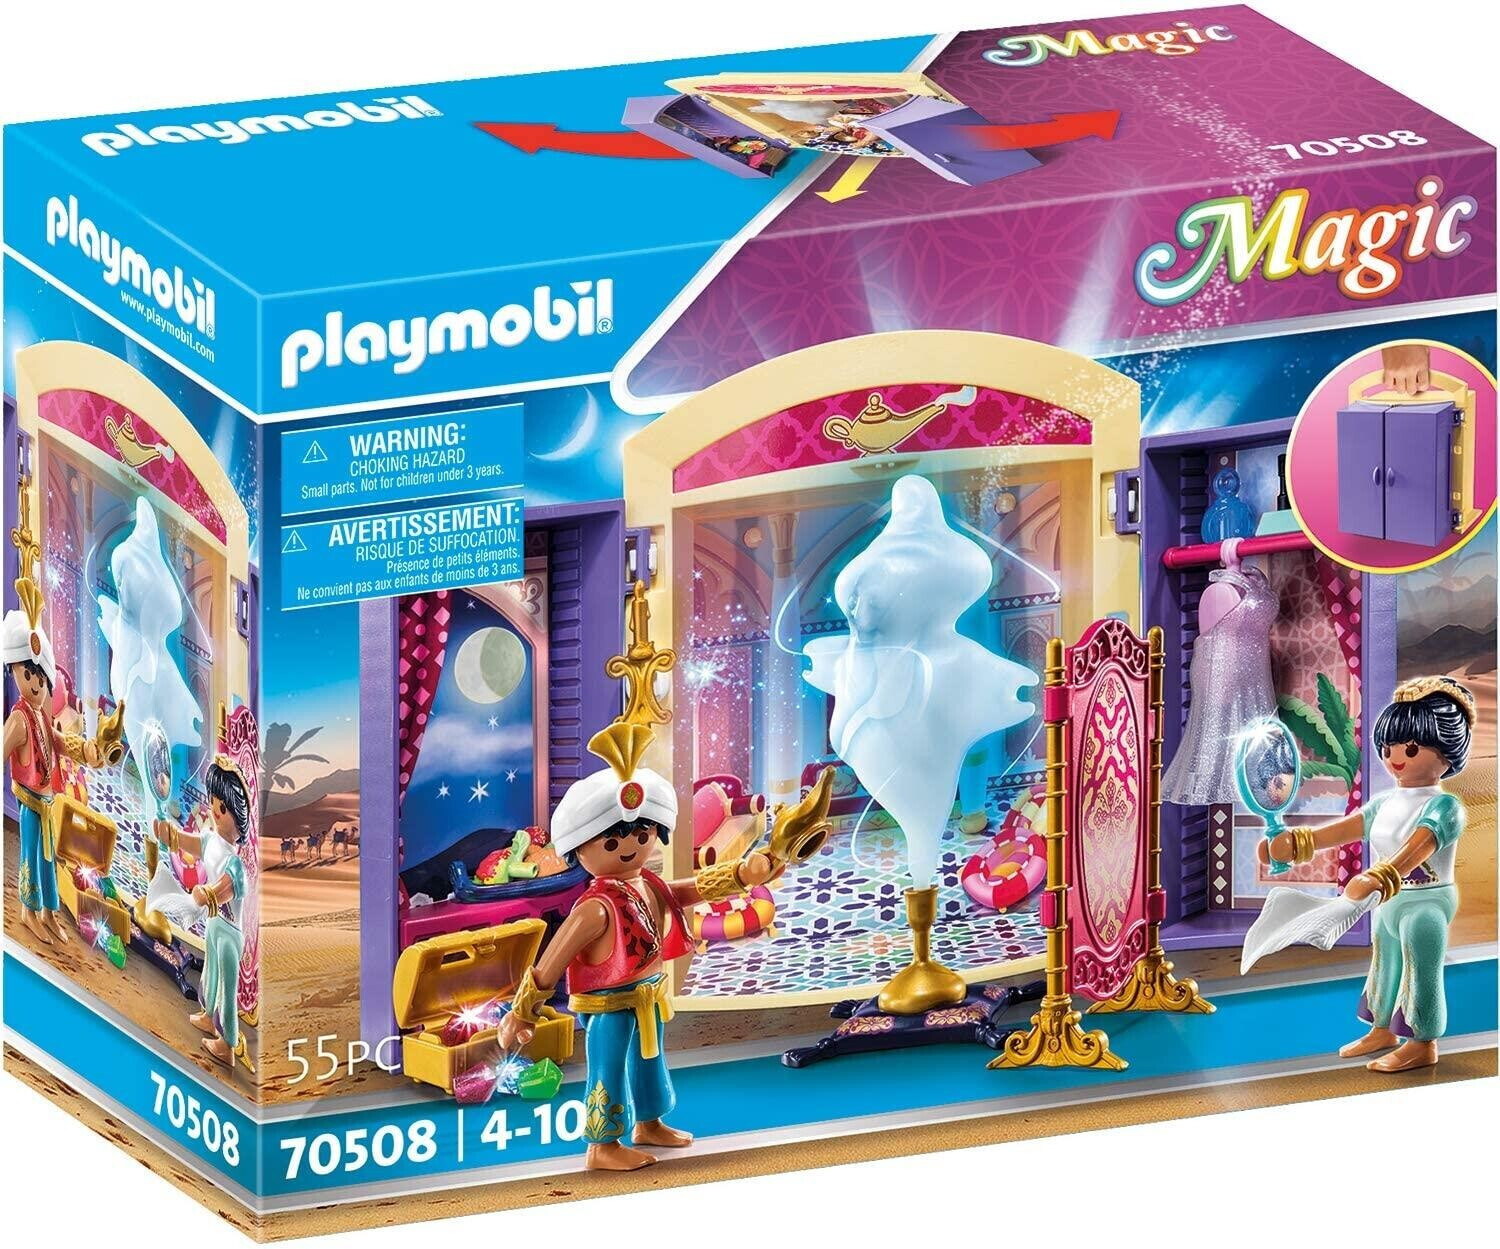 Photos - Toy Car Playmobil Magic – Play Box Oriental Princess  (70508)